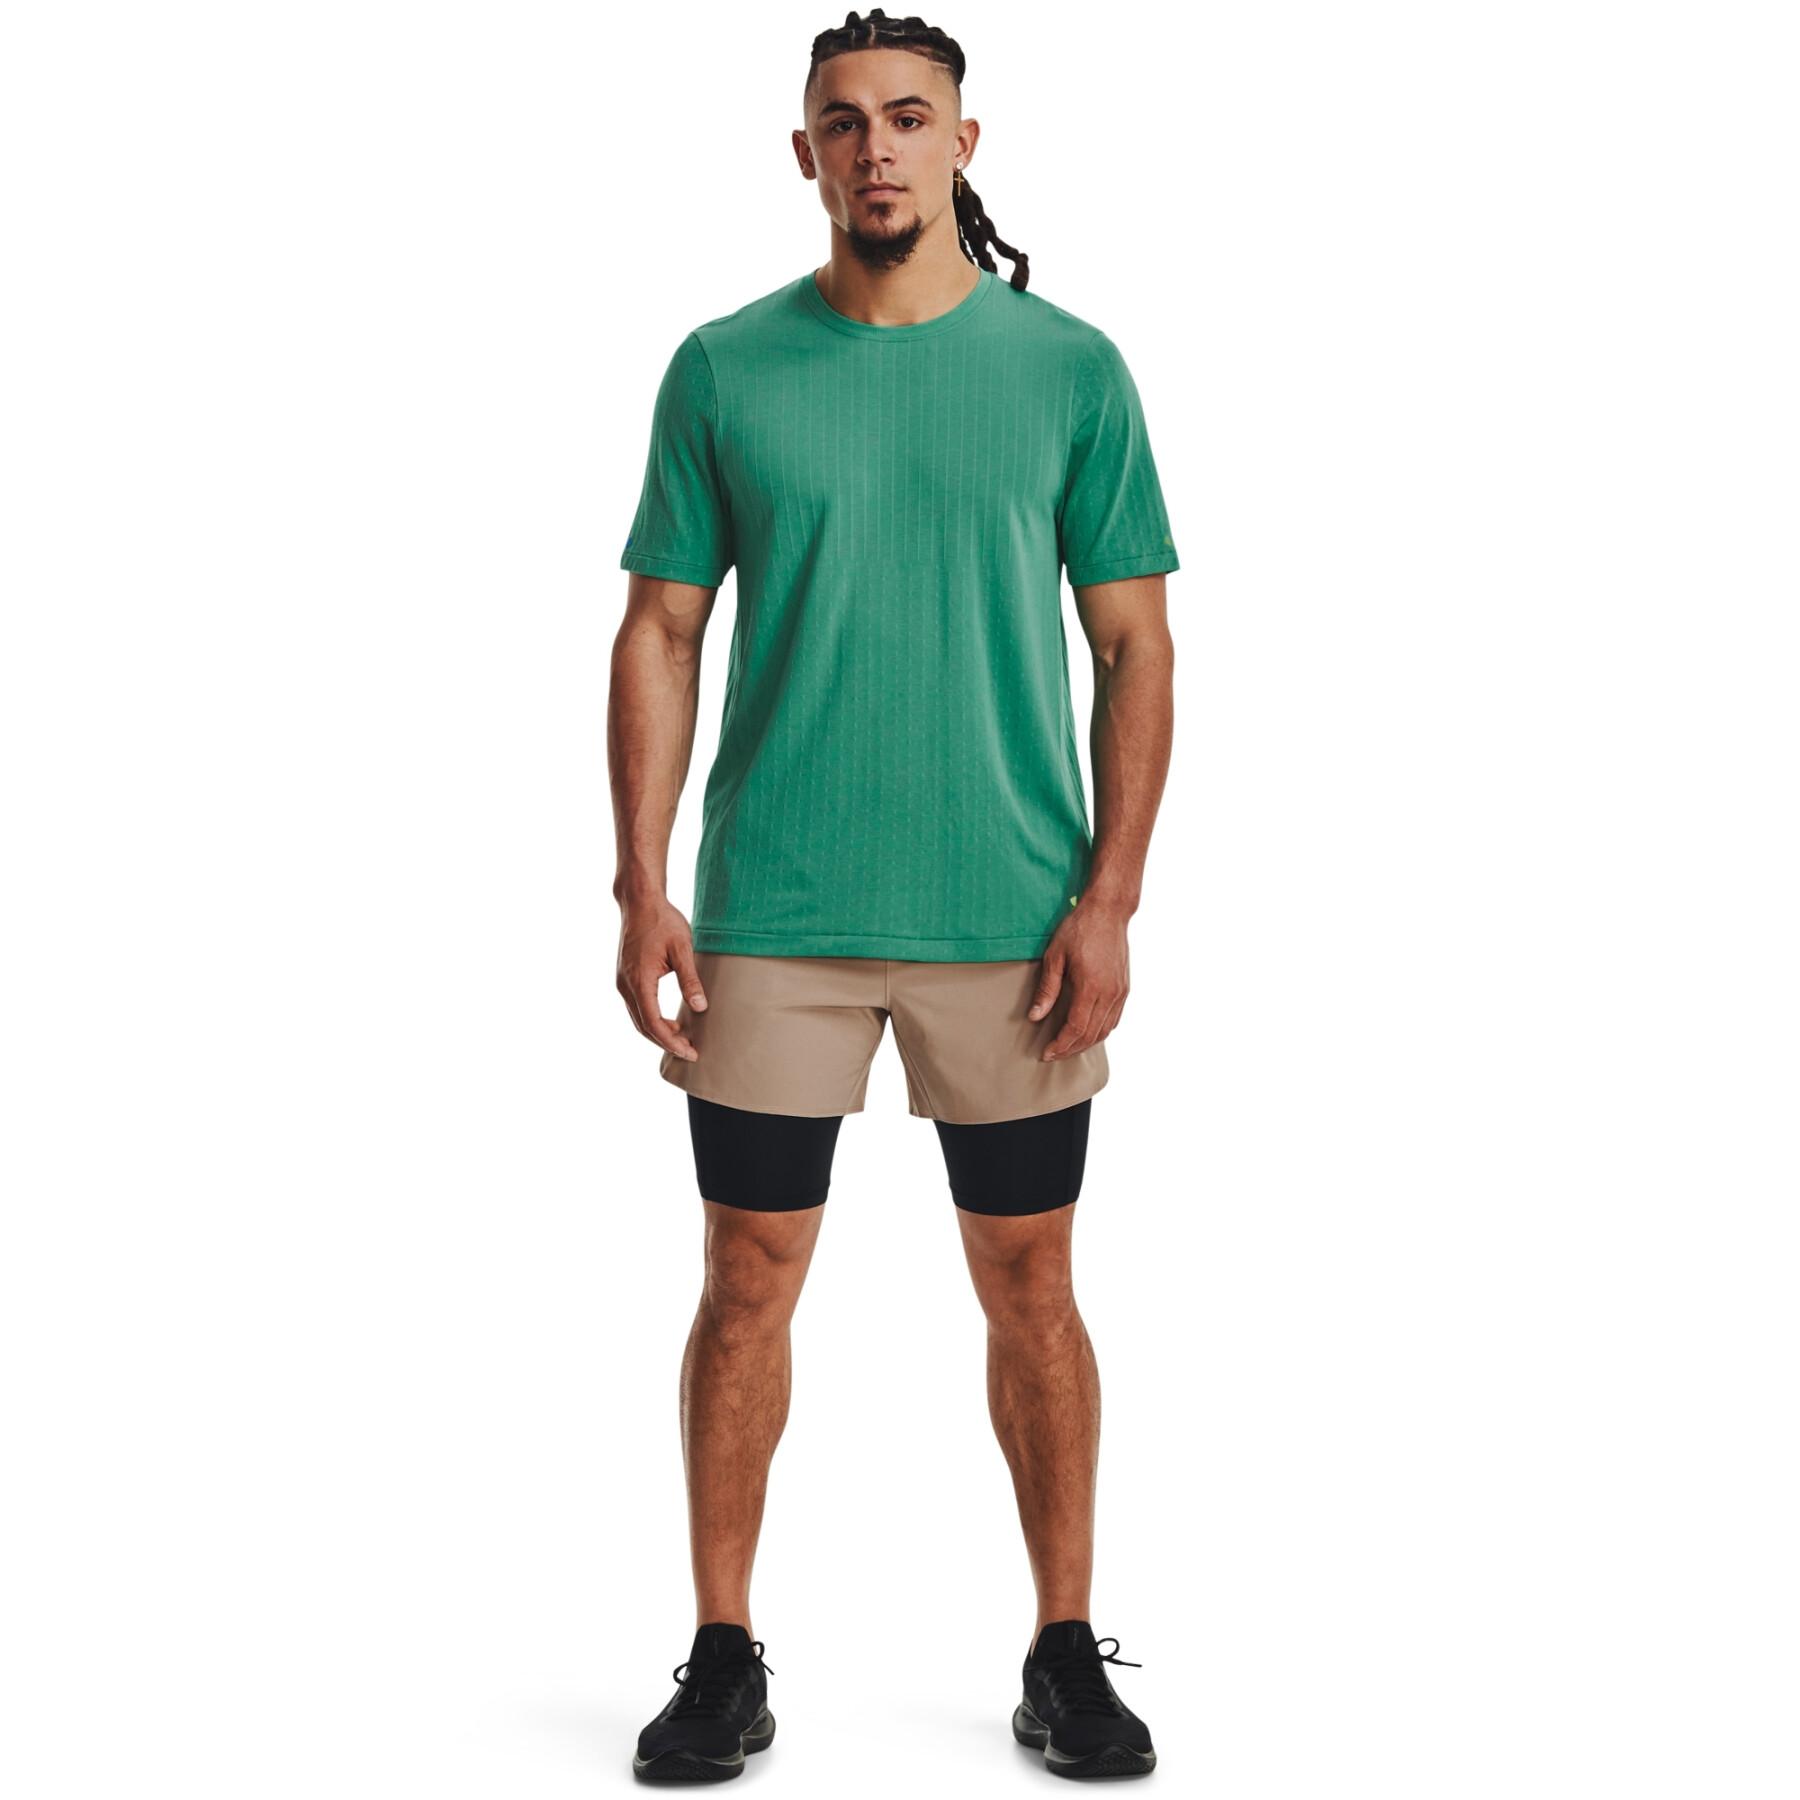 Pantalones cortos tejidos 2 en 1 Under Armour Peak